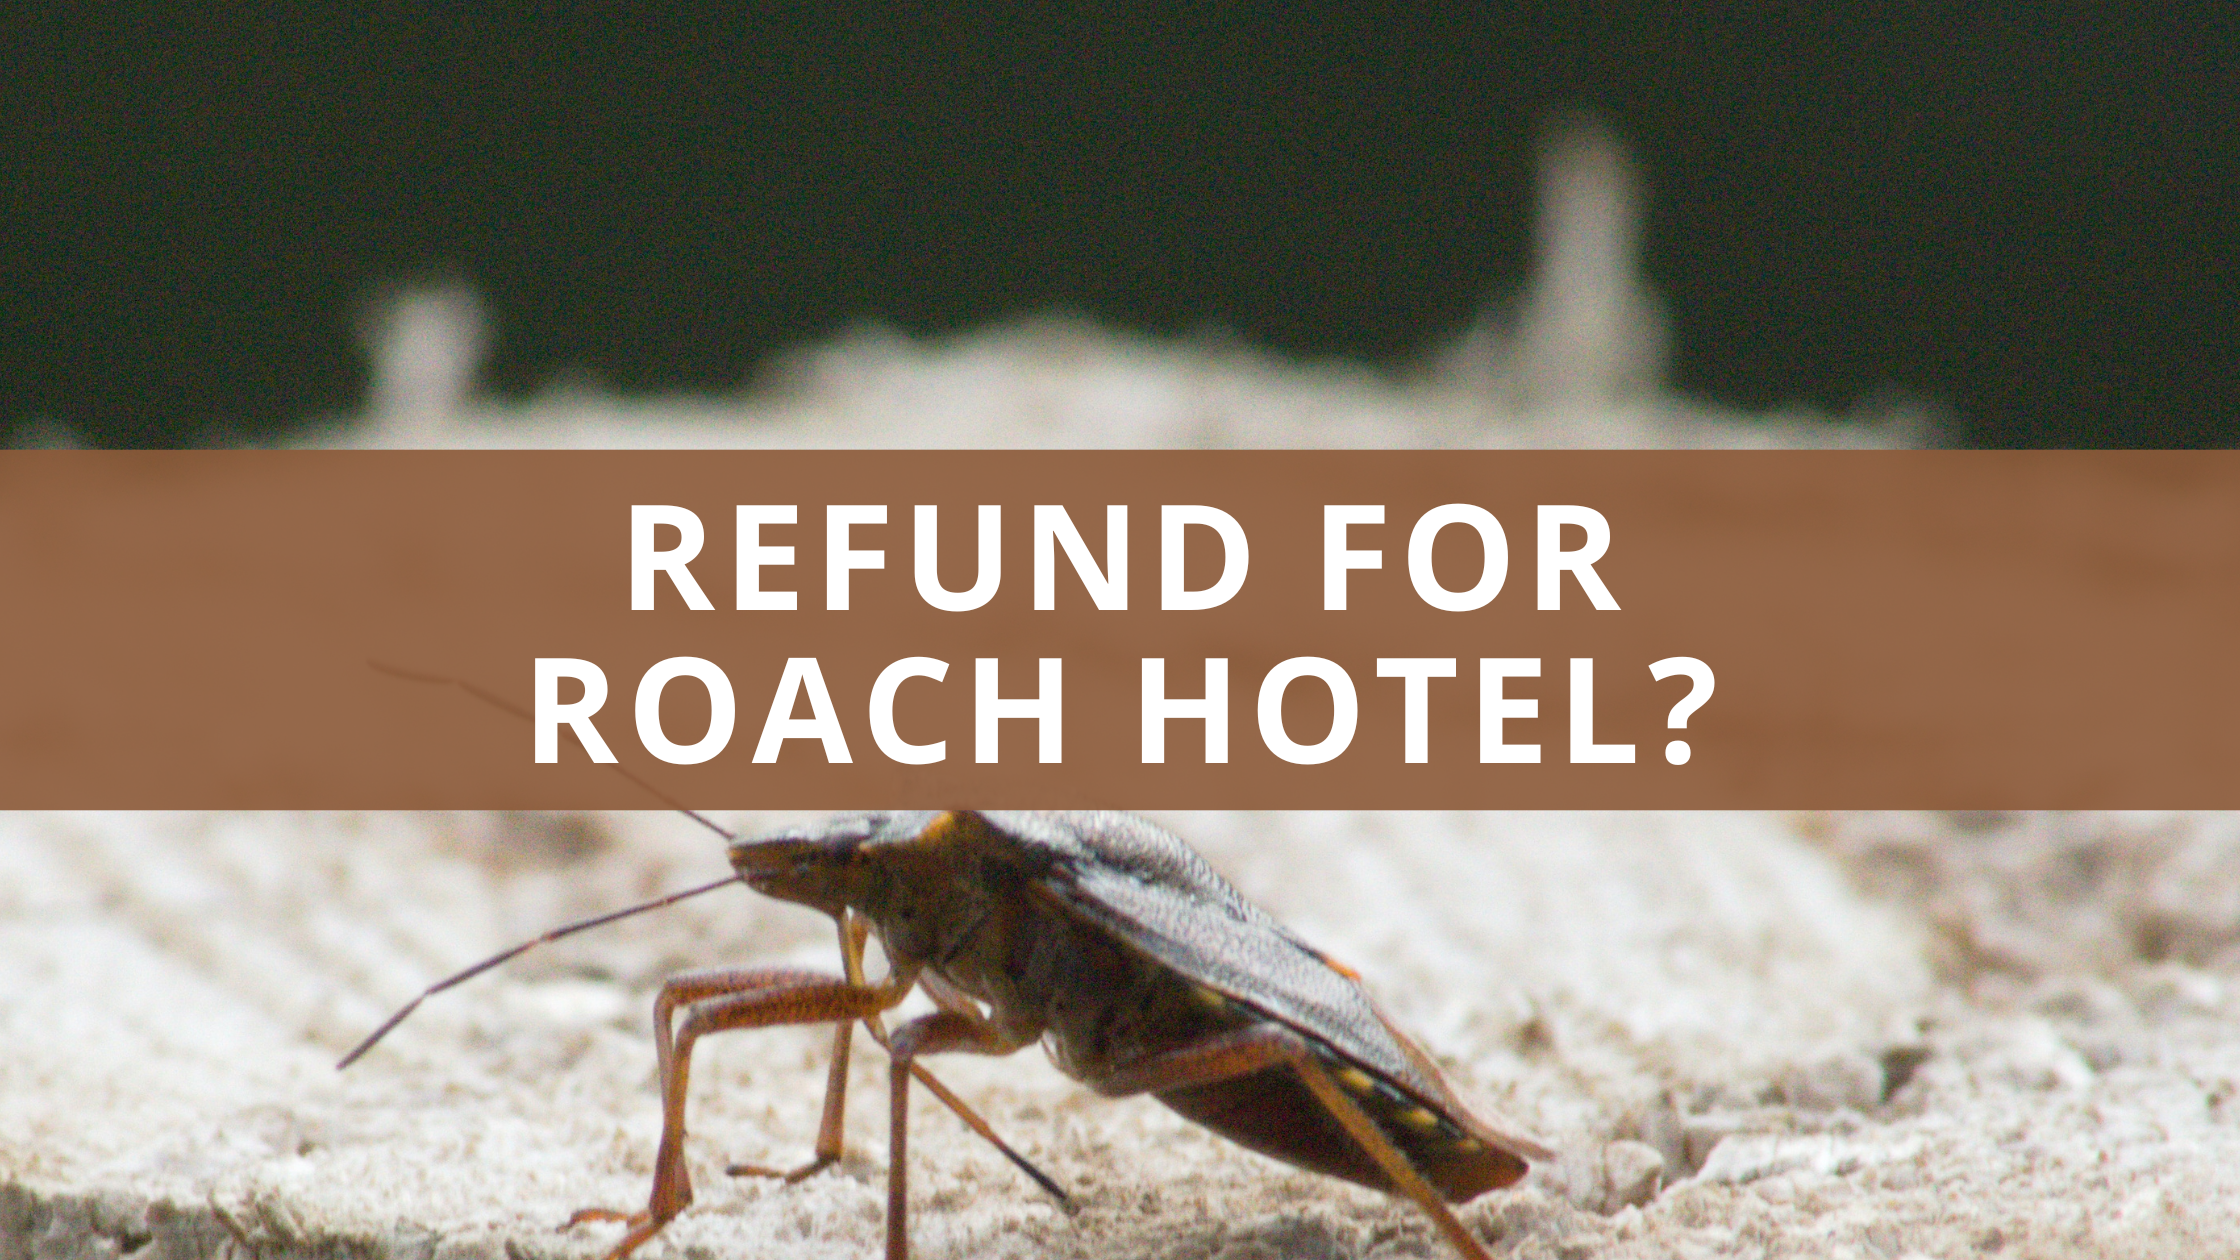 Refund for Roach Hotel